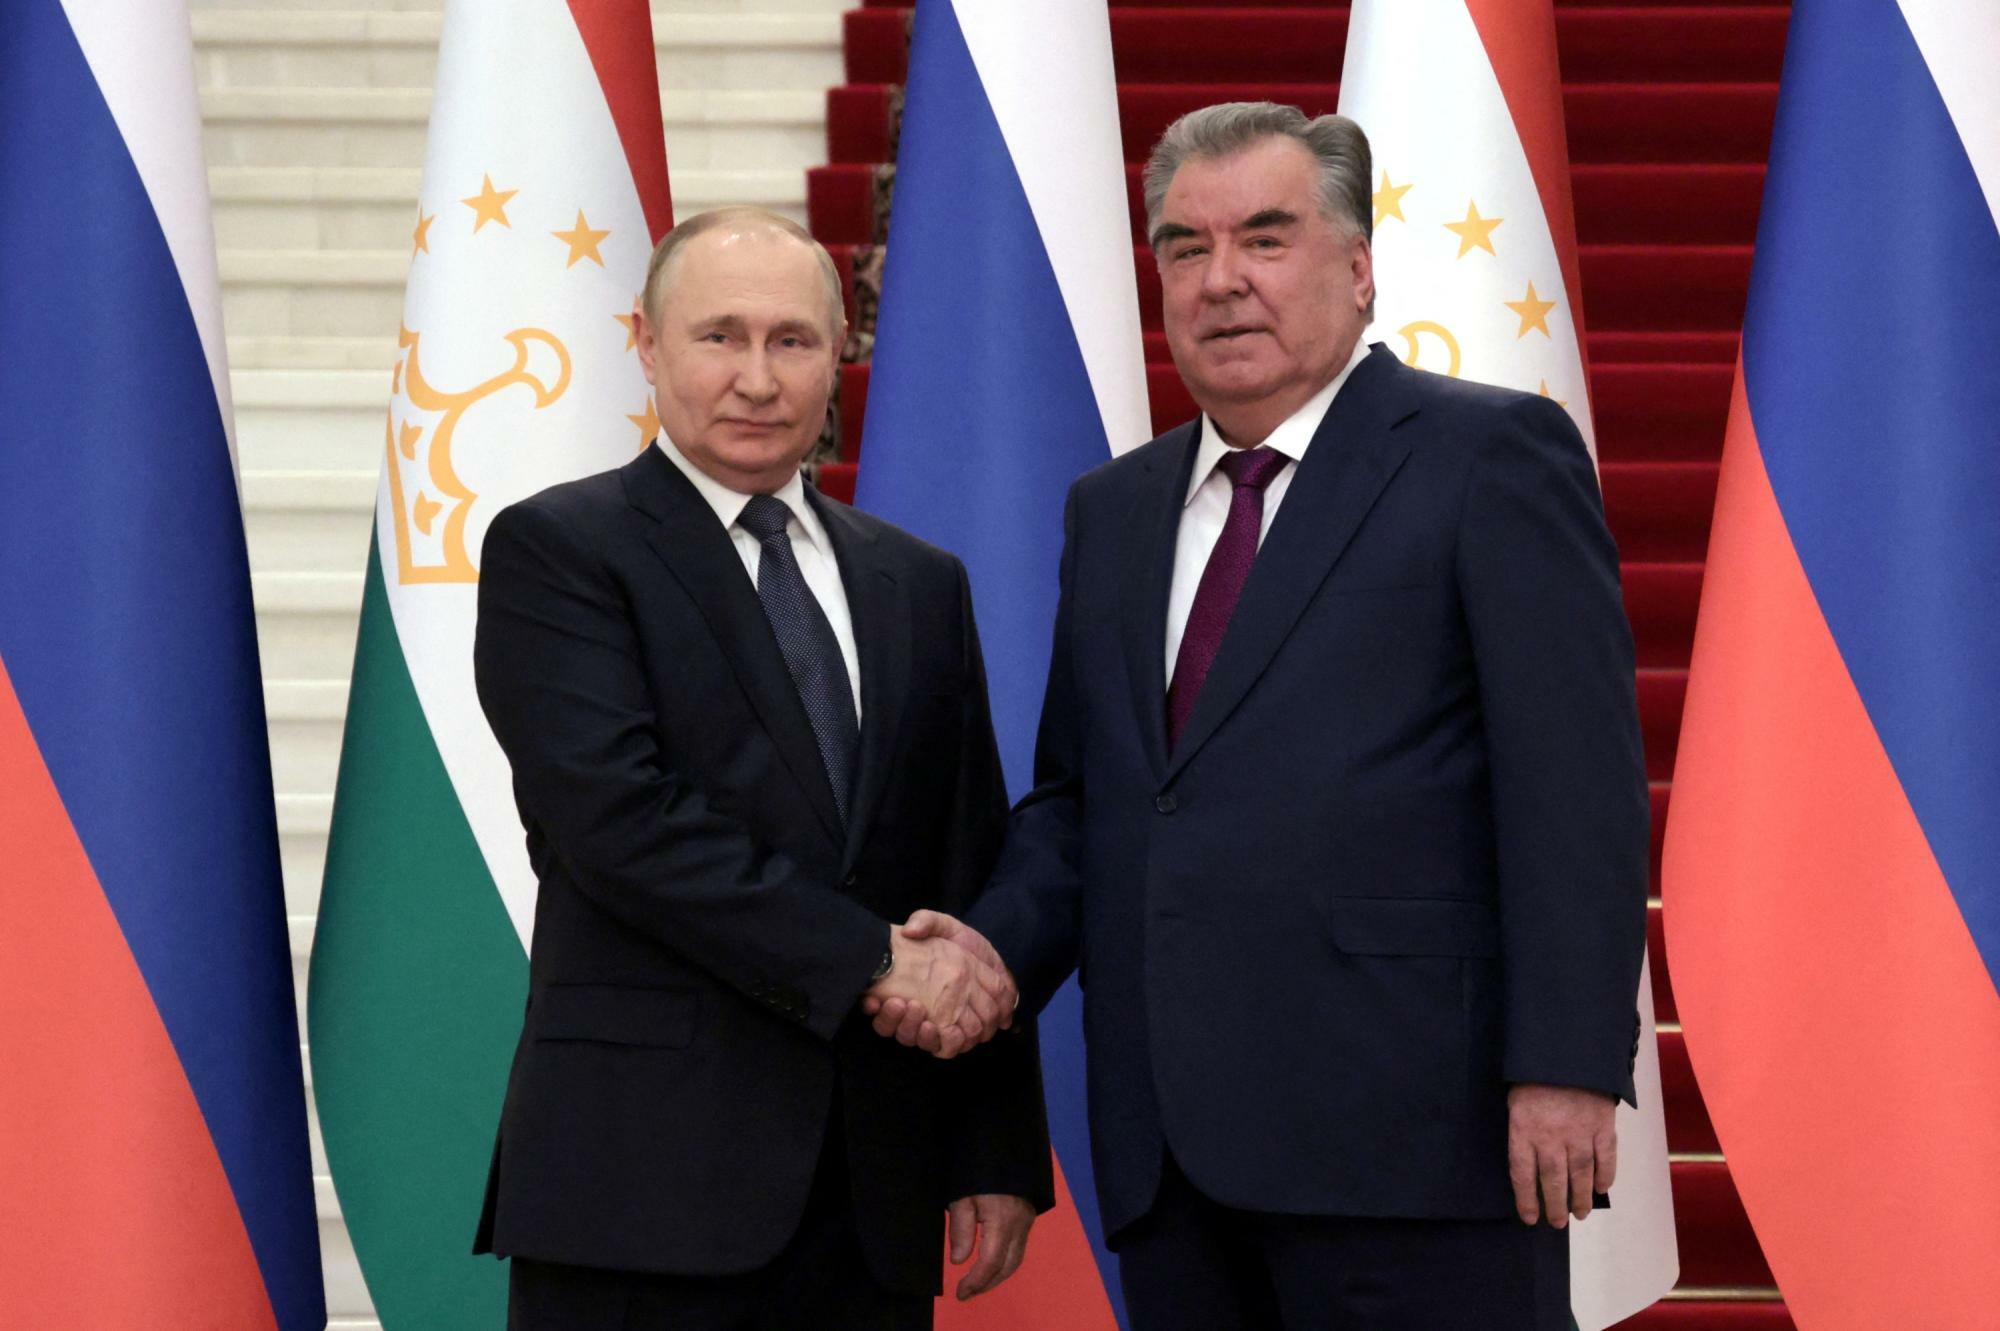 タジキスタンの首都ドゥシャンベでプーチン大統領と握手するラフモン大統領。政府の要職は彼の家族が占めており、国会議長および首都市長を務めるのは息子のルスタム・エモマリ氏である。